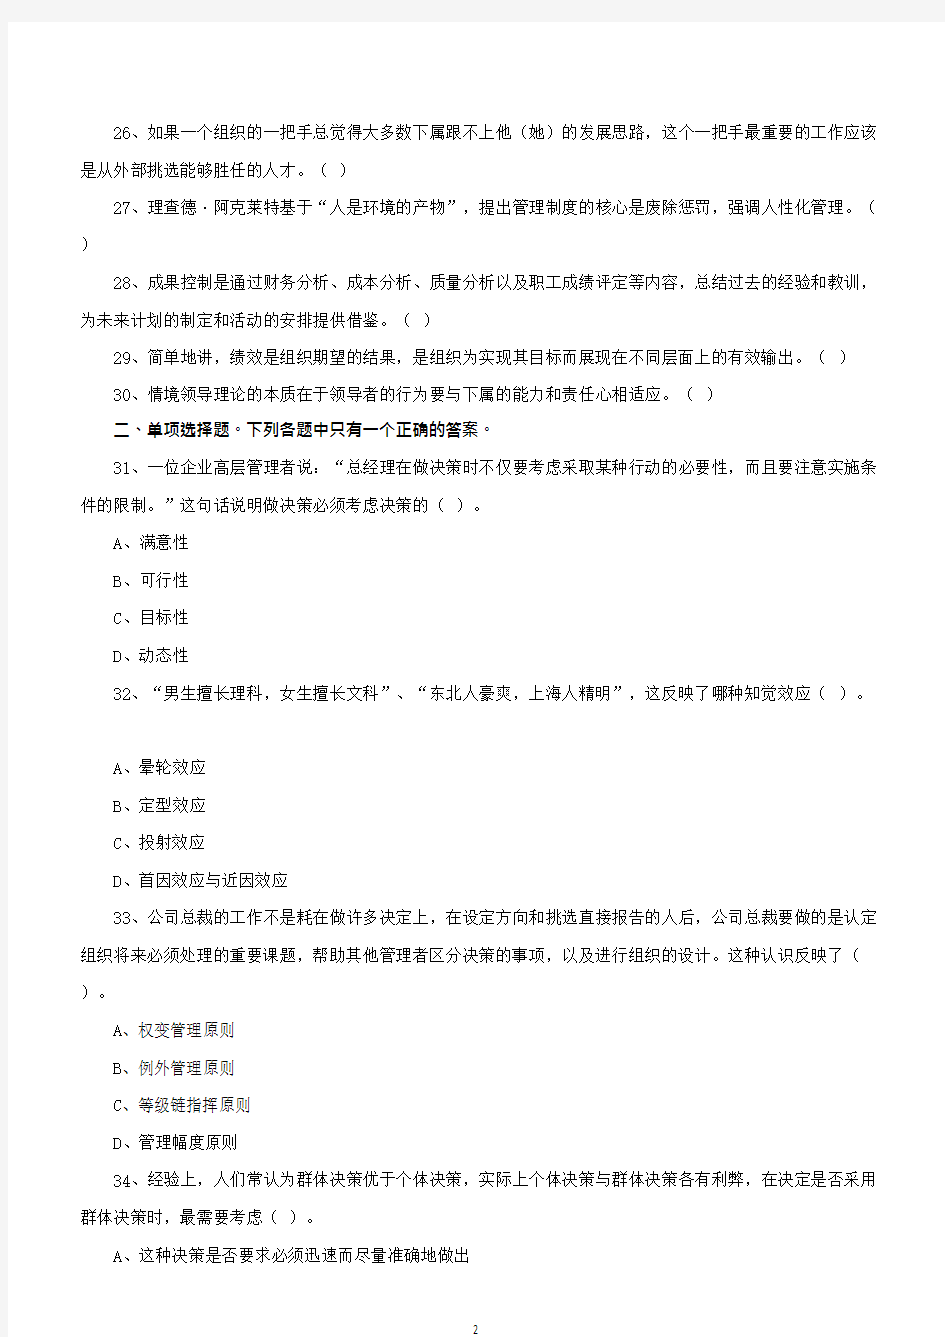 2019年下半年重庆市属事业单位考试《管理基础知识》真题答案12